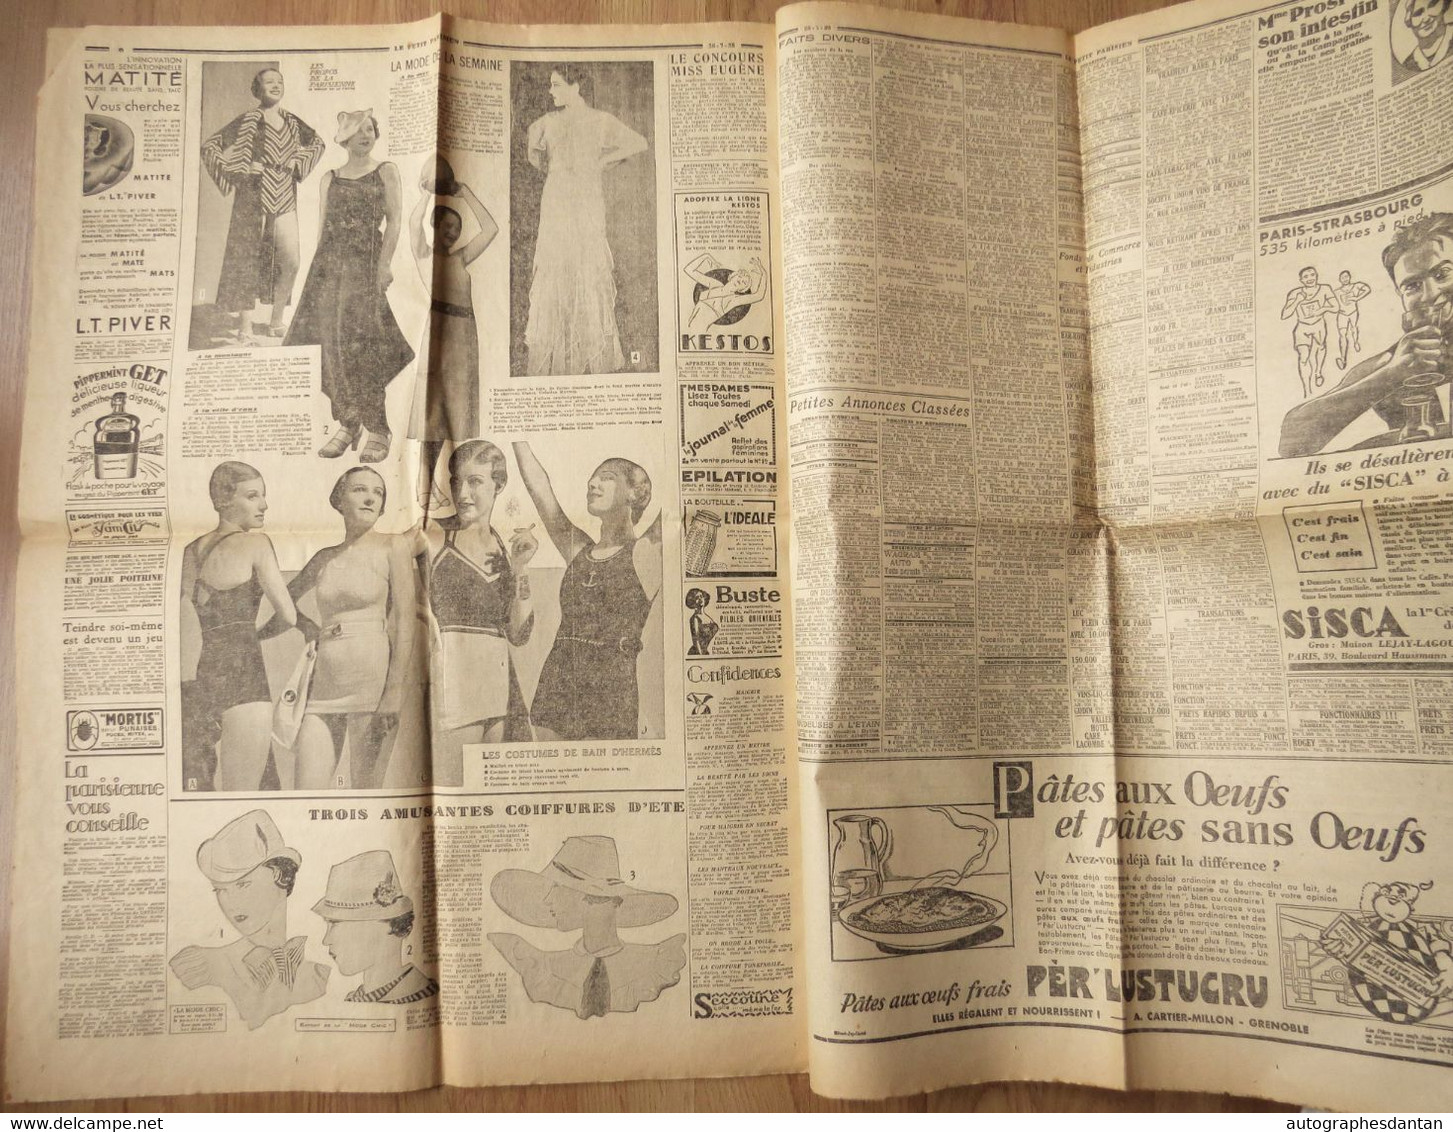 ● Le Petit parisien - journal du 26 juillet 1933 - Avant la finale de la coupe Davis - 70 marcheurs > Strasbourg - etc